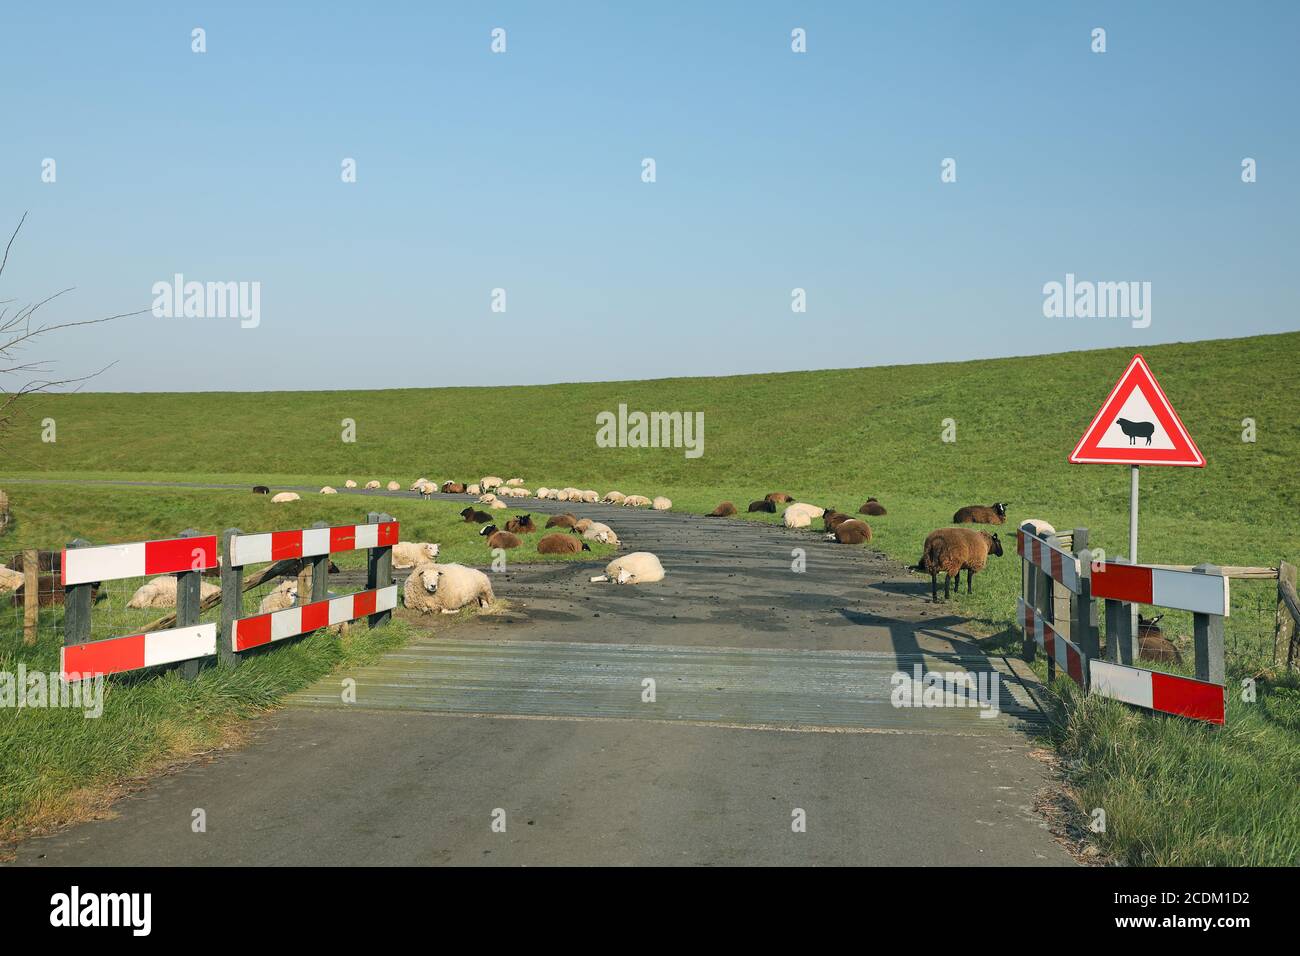 Ovejas en la carretera con una señal de advertencia "Cuidado de las ovejas", países Bajos, norte de Holanda Foto de stock